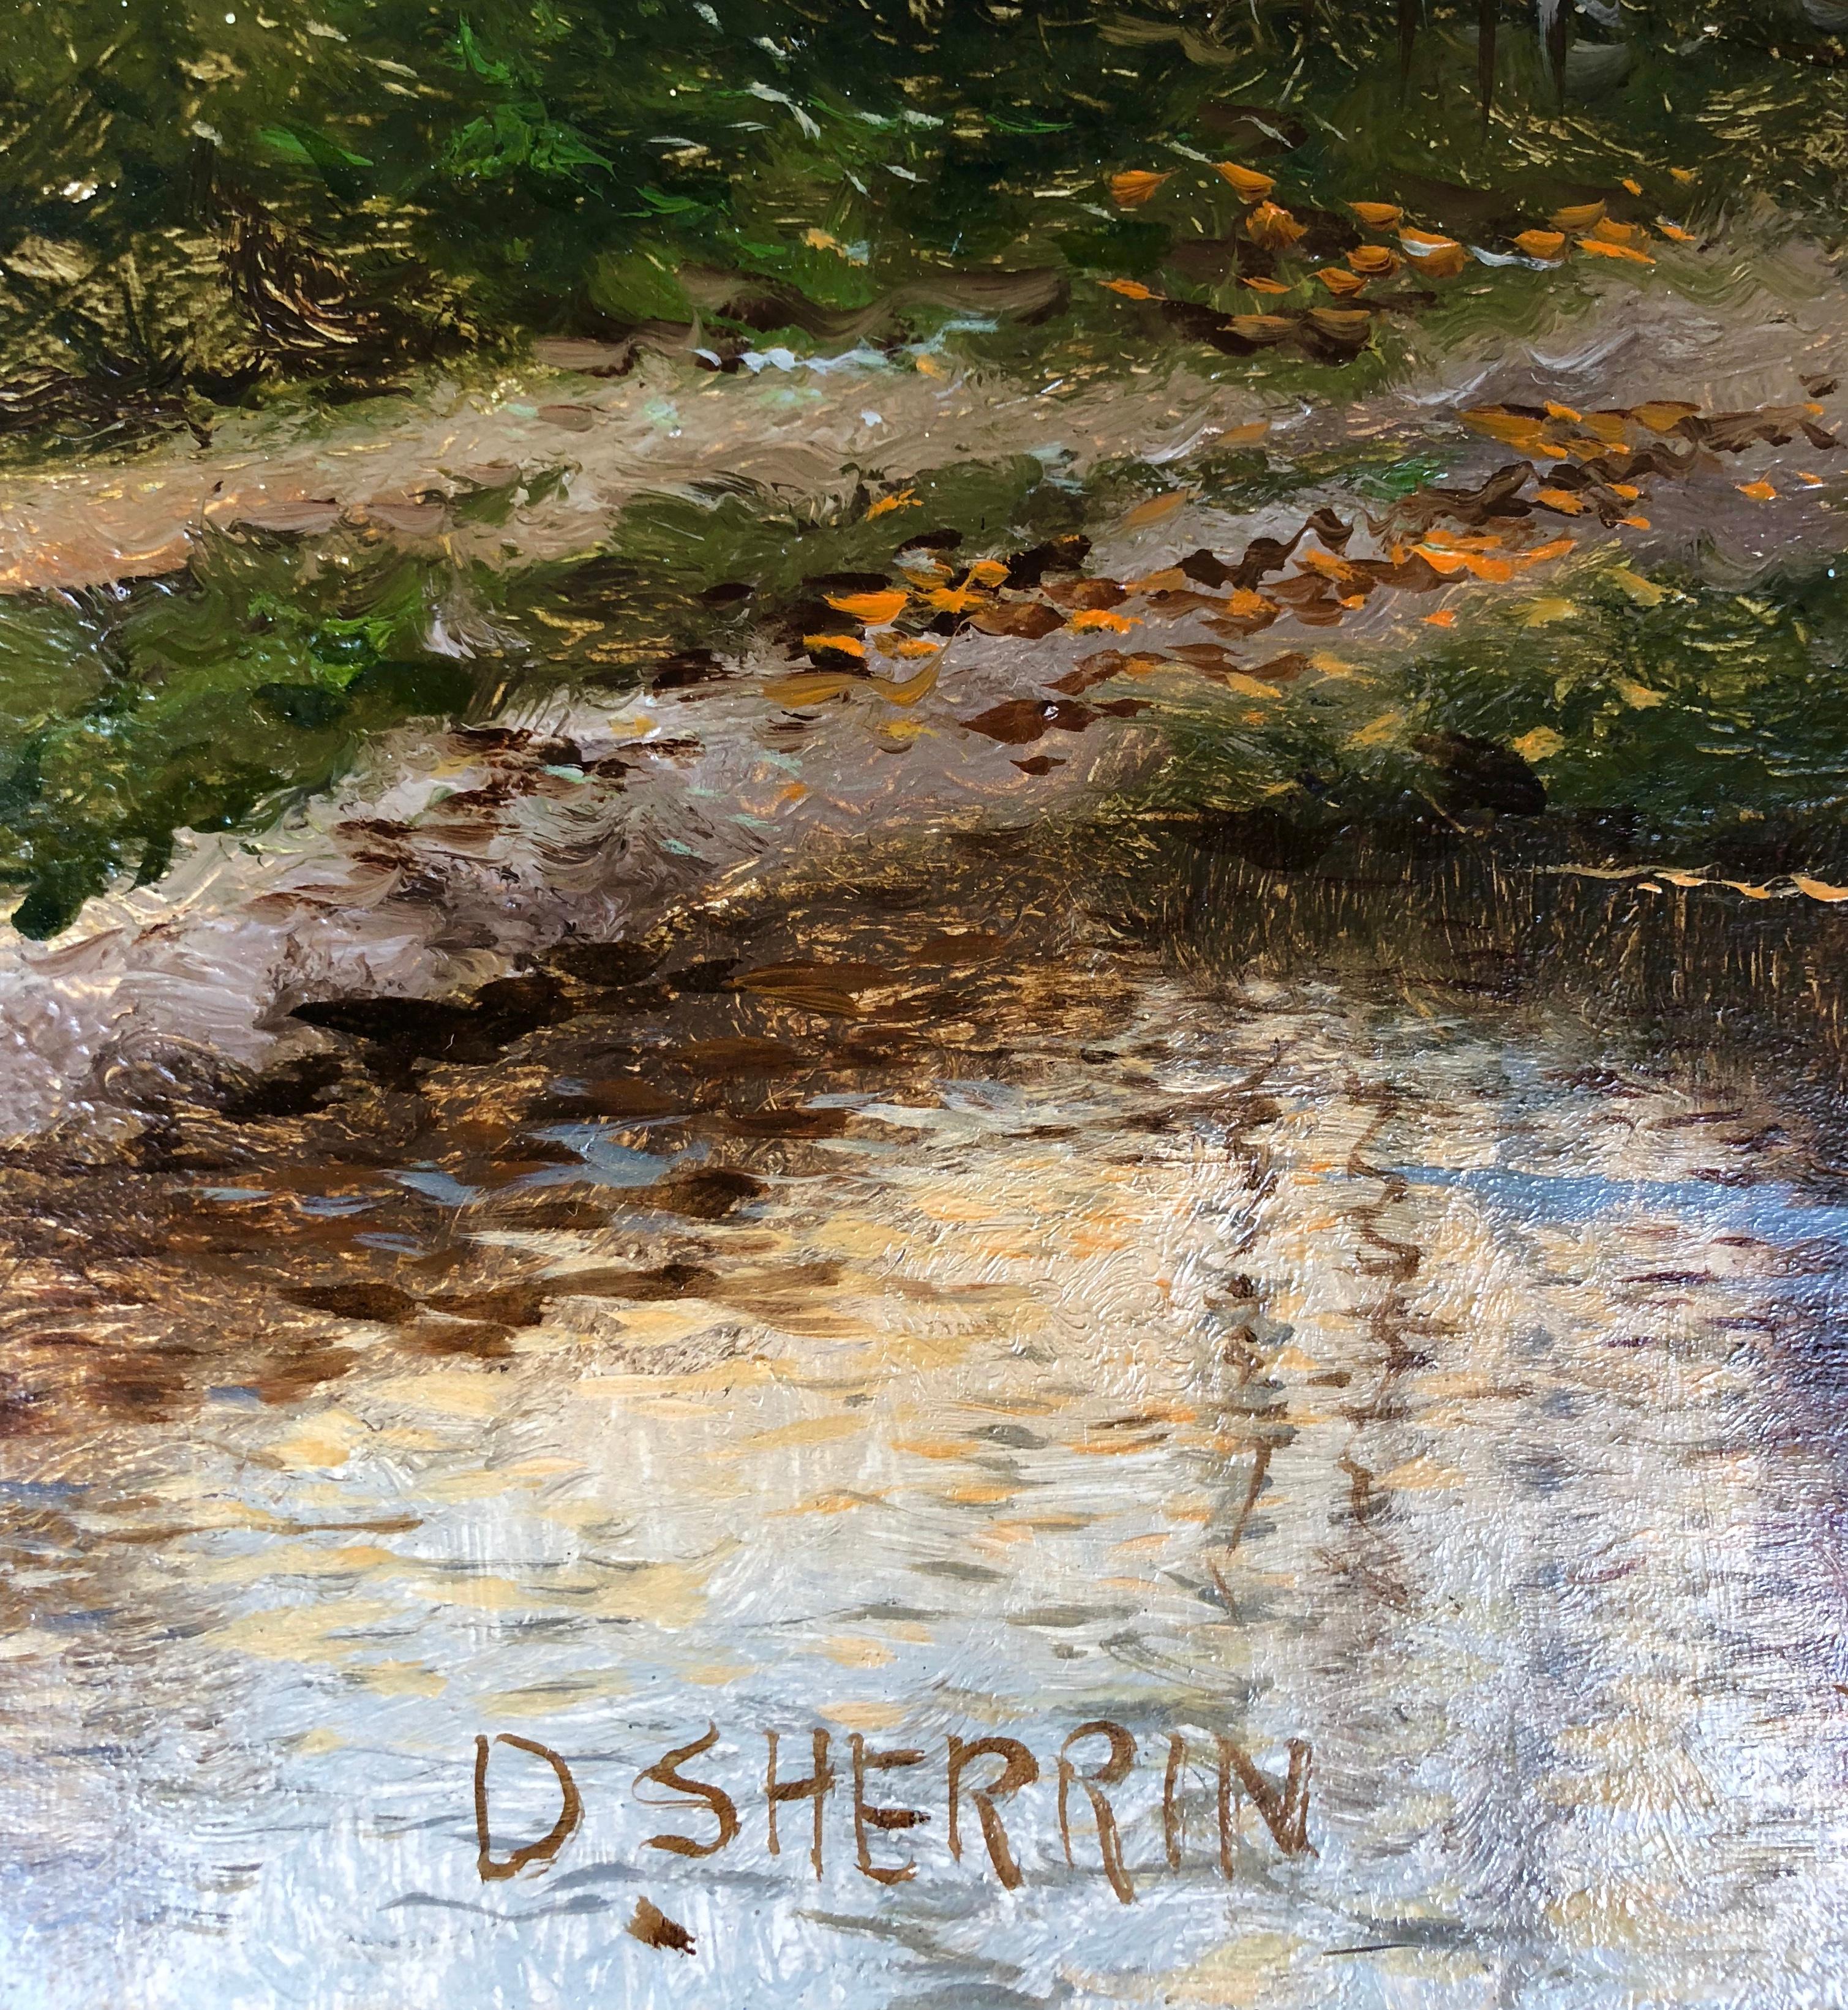 Huile sur toile, signée en bas à gauche.

Daniel Sherrin (1868-1940) : Né à Brentwood, dans l'Essex, en 1868, Daniel Sherrin était le fils de John Sherrin et, plus tard, le père de R. D. Sherrin, deux peintres réputés. Il a reçu sa formation